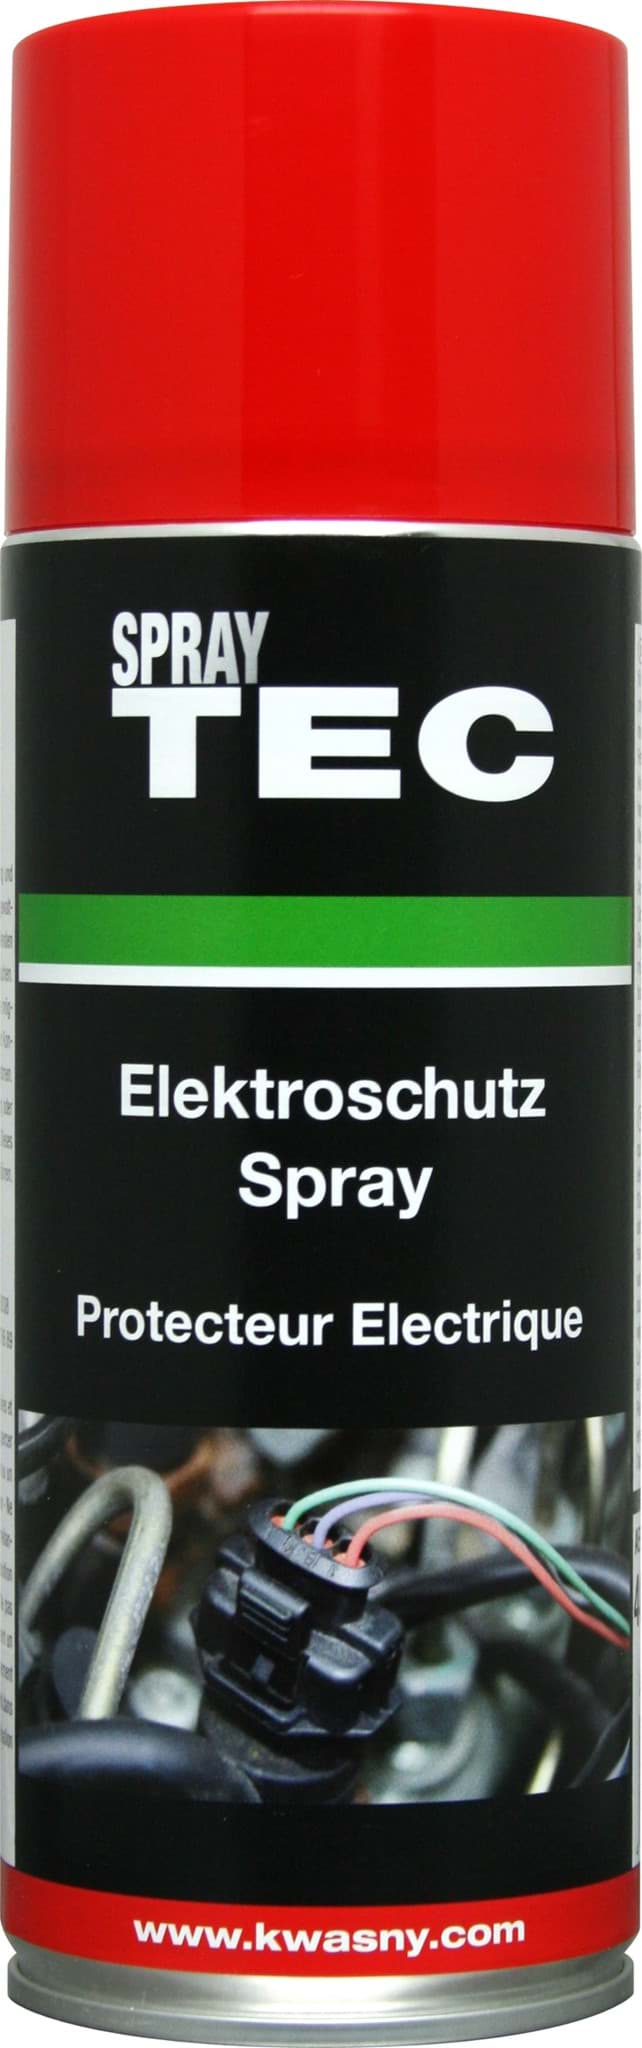 Picture of Elektroschutz-Spray 400ml SprayTEC 235003